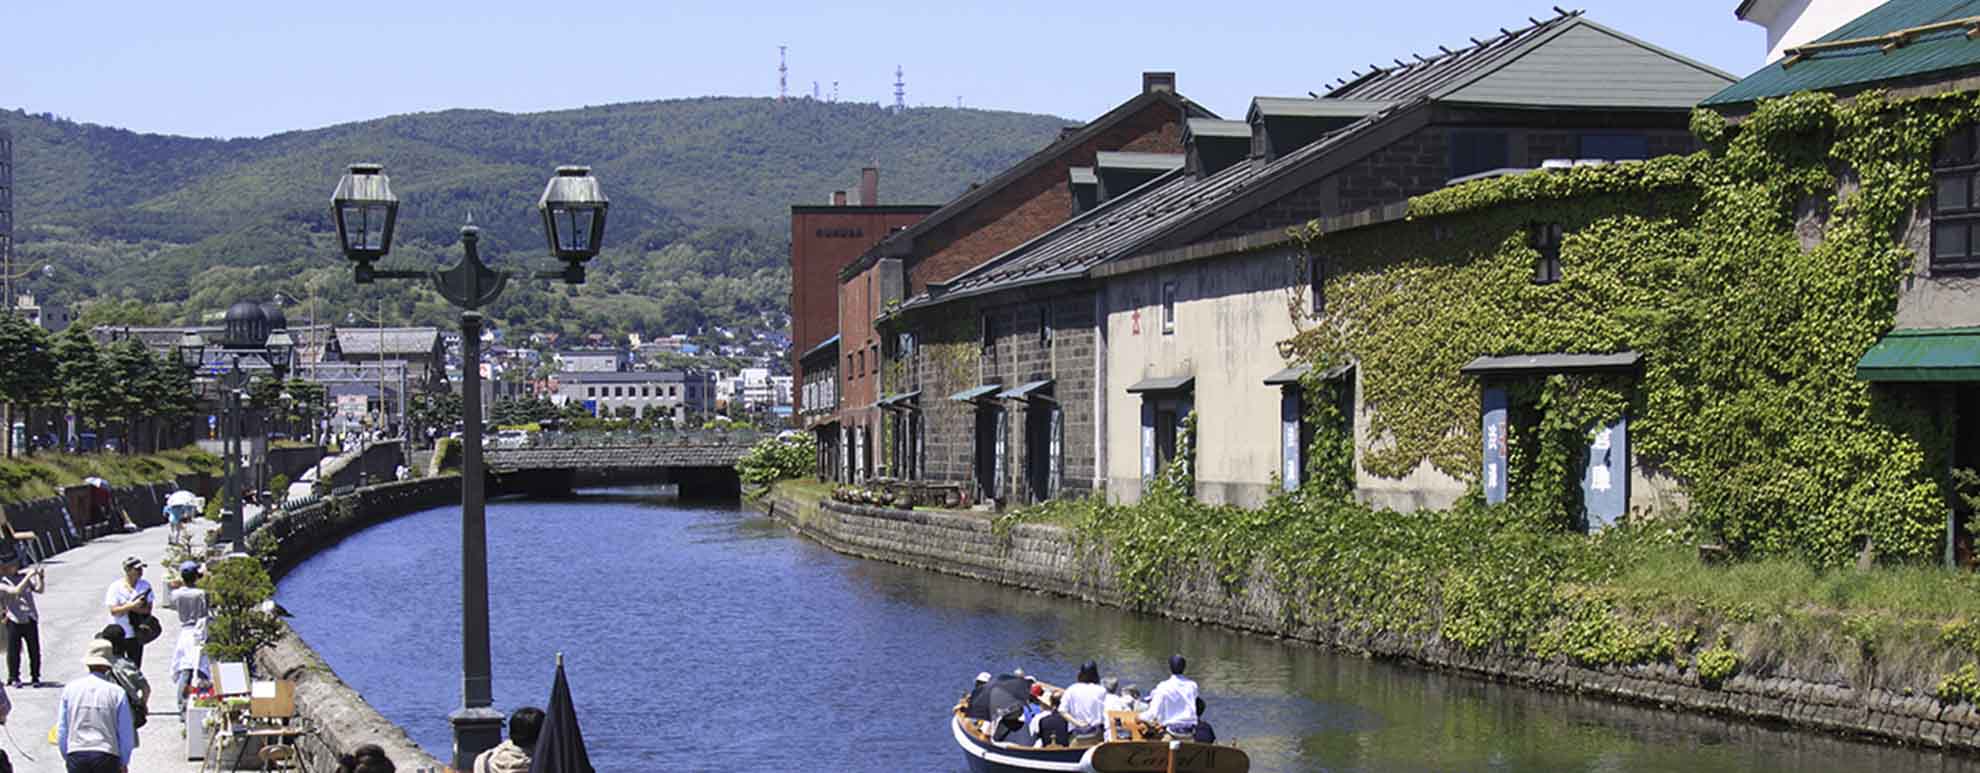 北海道小樽市・小樽観光の定番スポット小樽運河